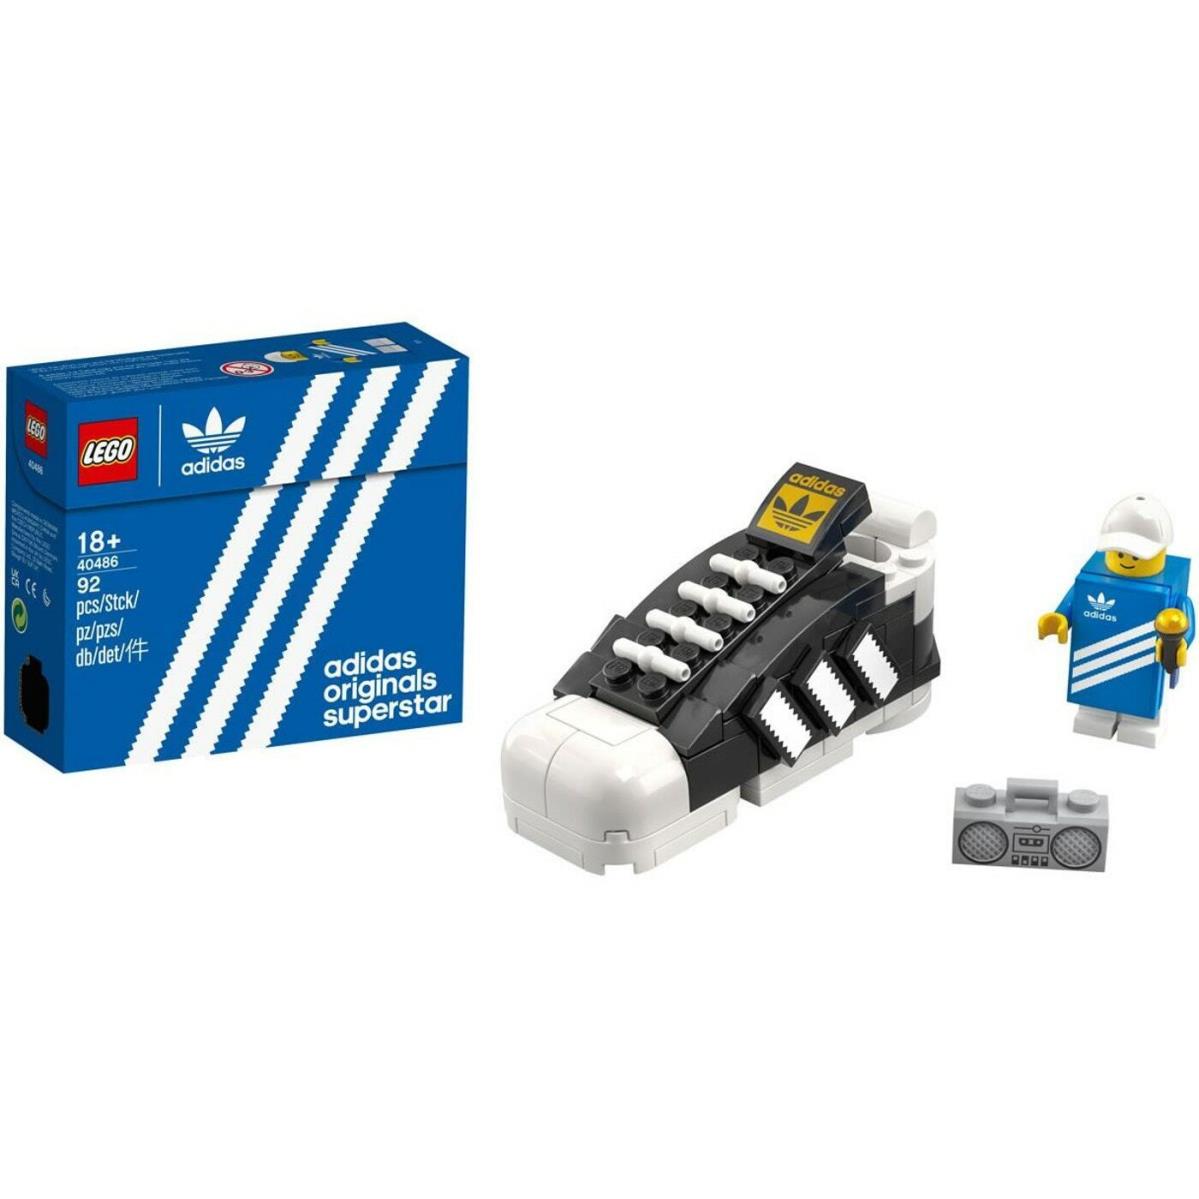 Lego - Rare Exclusive Promo - 40486 Adidas Superstar Mini